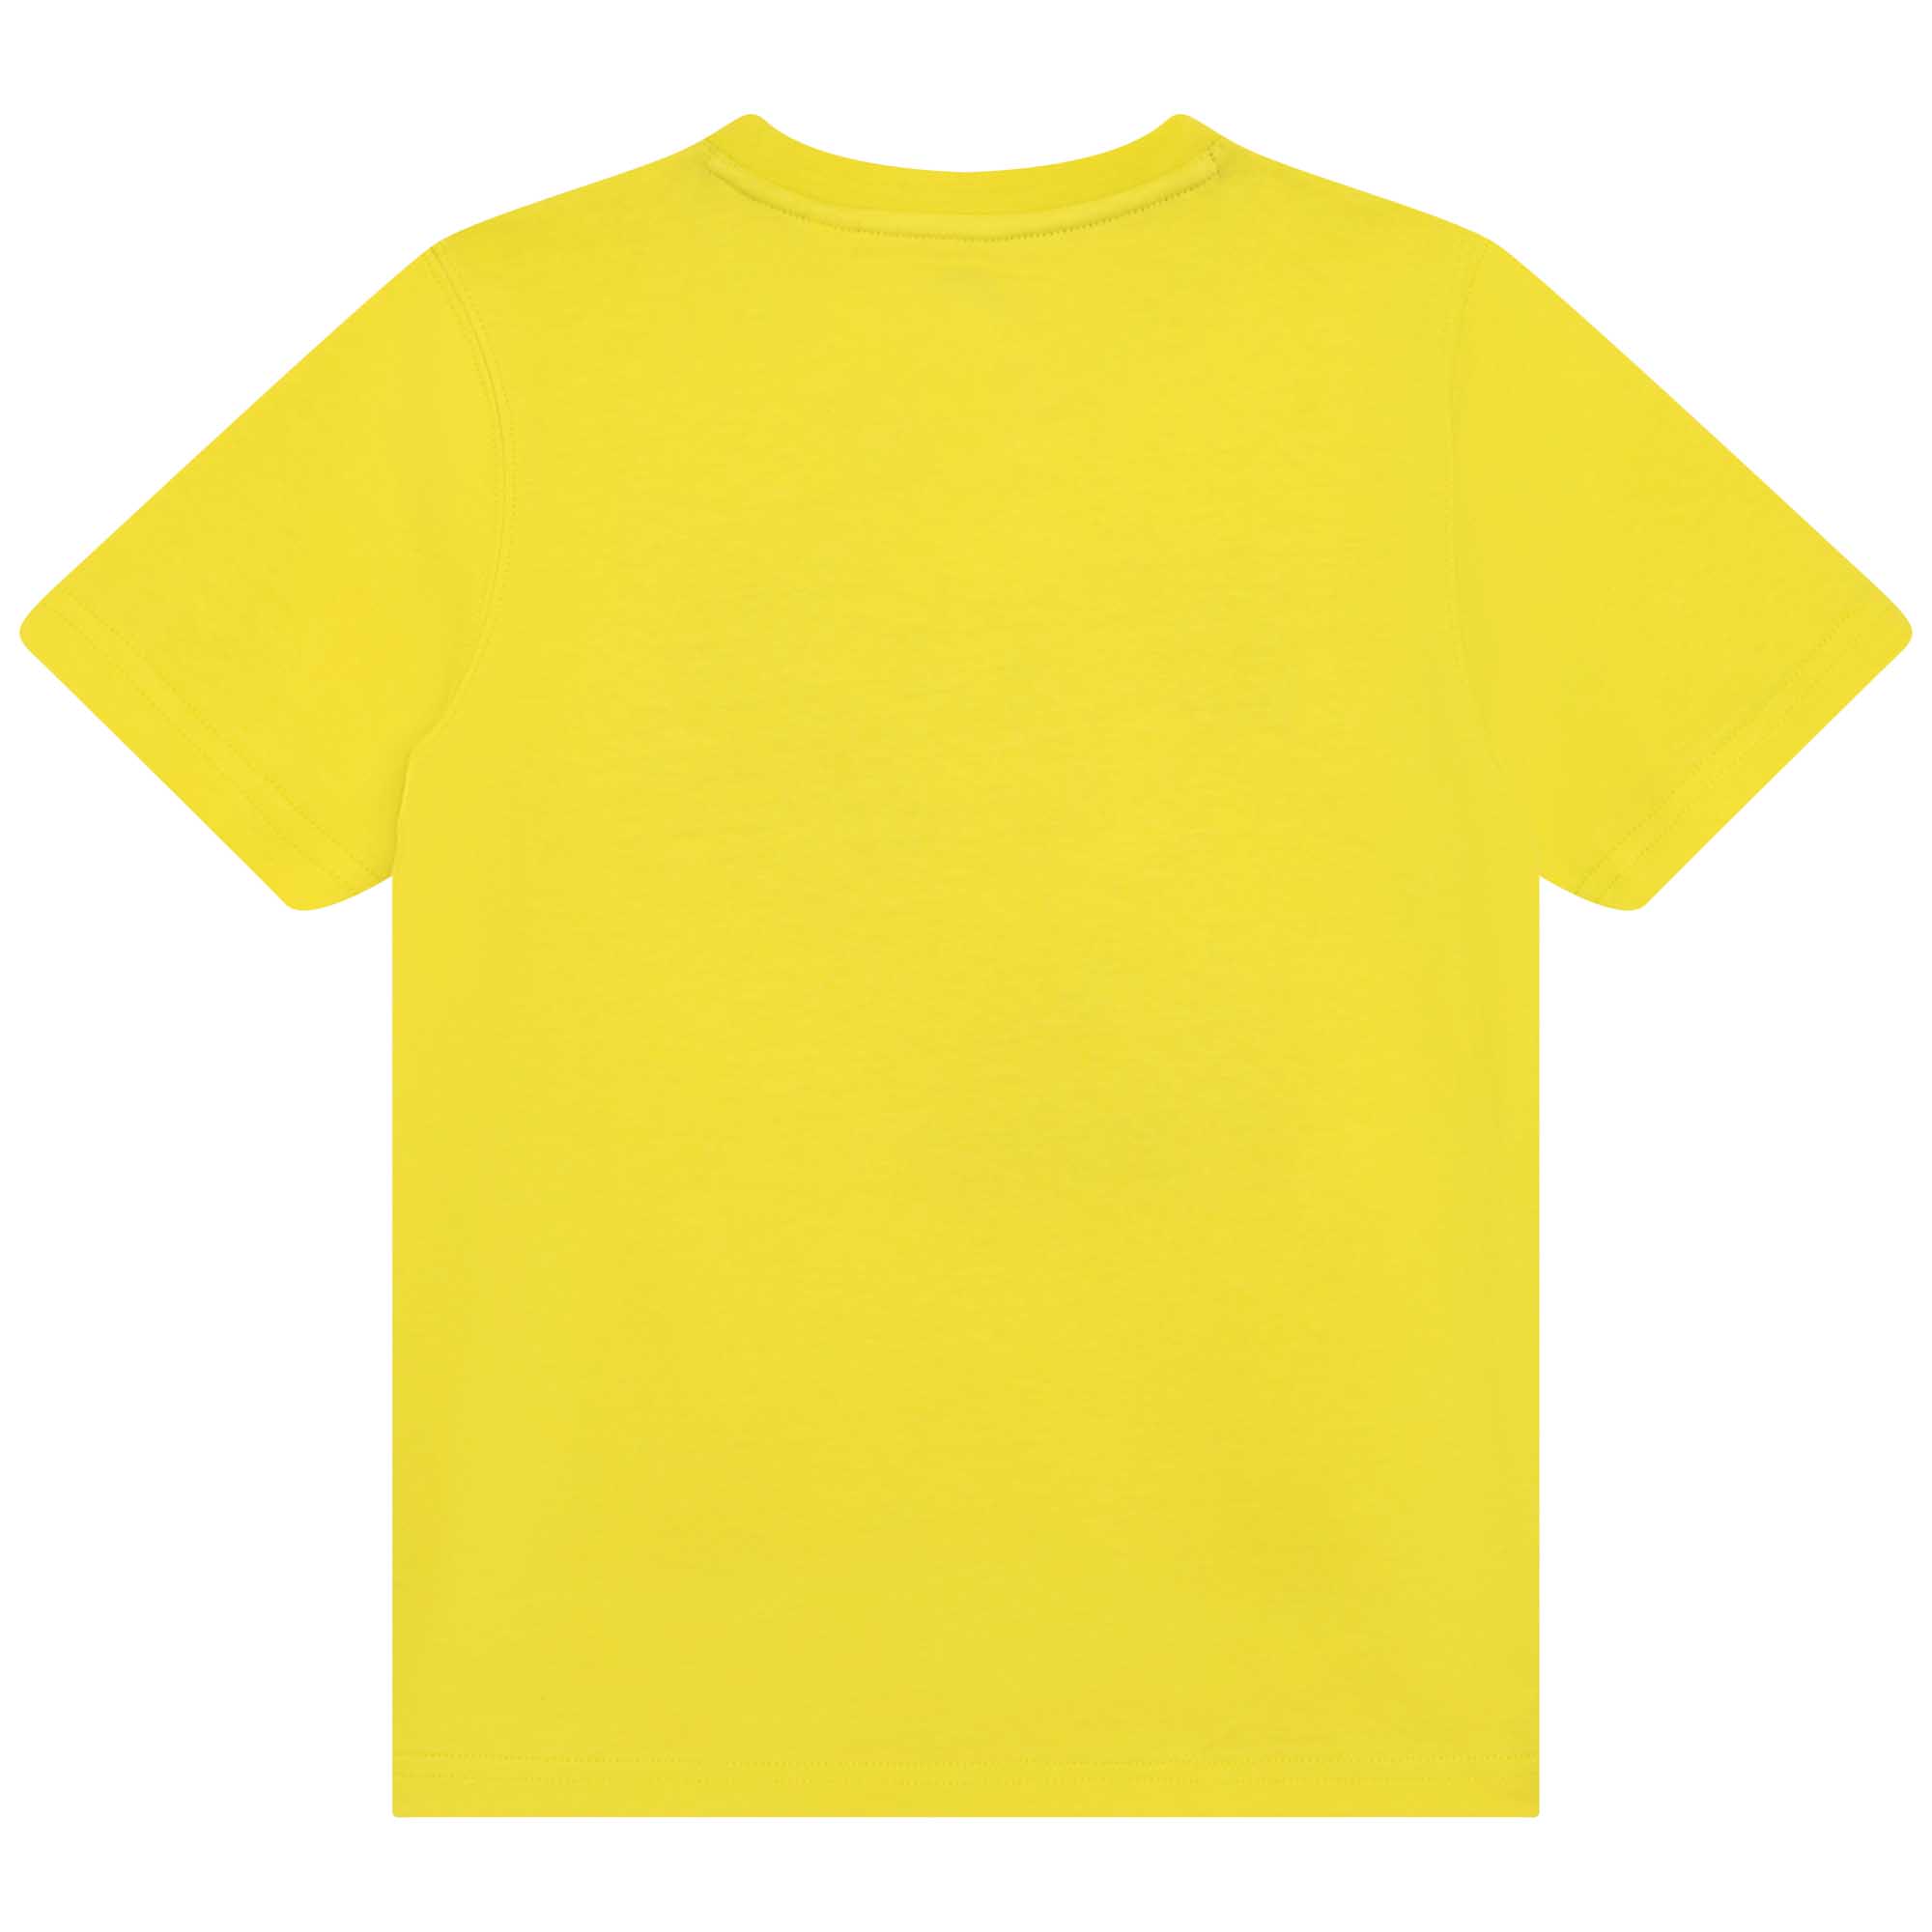 T-shirt avec imprimé placé TIMBERLAND pour GARCON